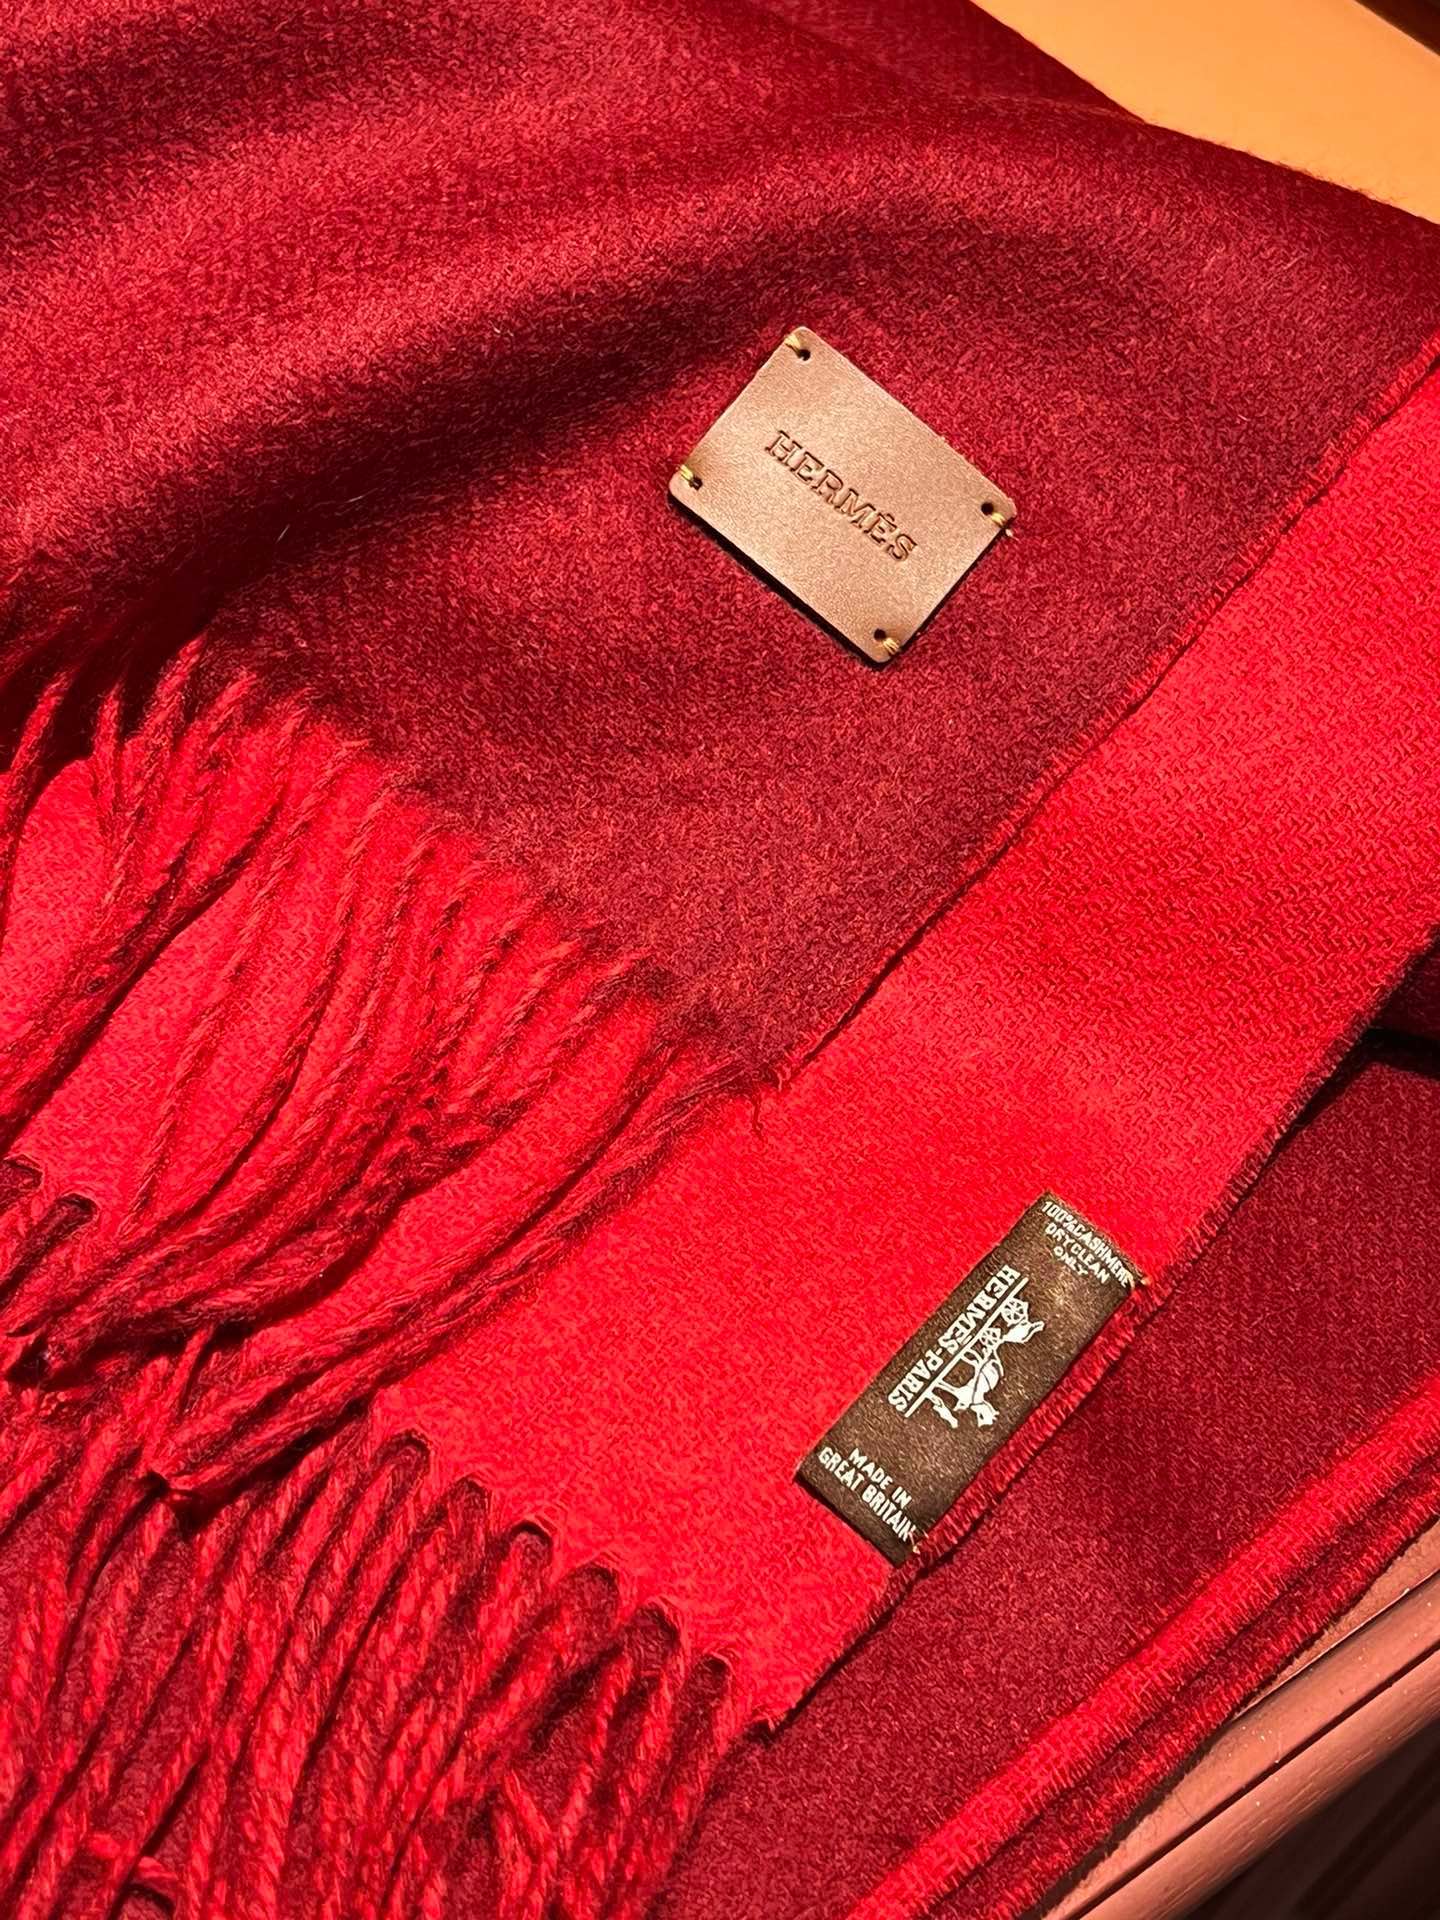 爱马仕巴黎时装展商务男士女士通用双面羊绒披肩代工厂臻选上乘的超细羊绒纤维进行纯手工精梳处理耗时耗力再以清